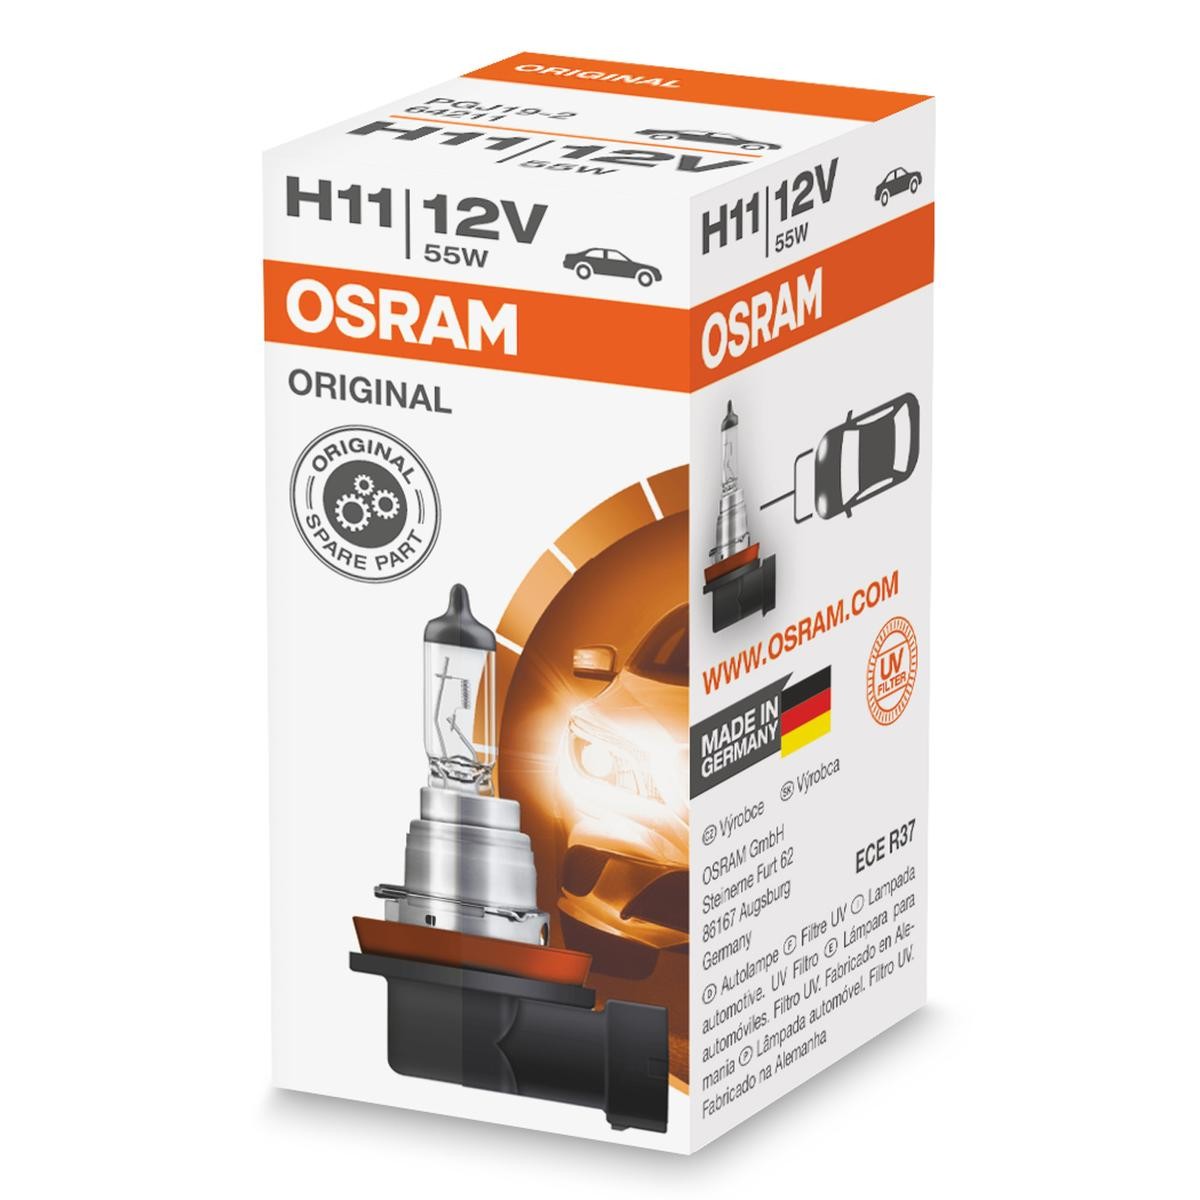 Achat de H11 OSRAM ORIGINAL H11 12V 55W PGJ19-2 3200K Halogène Ampoule, projecteur longue portée 64211 bon marché